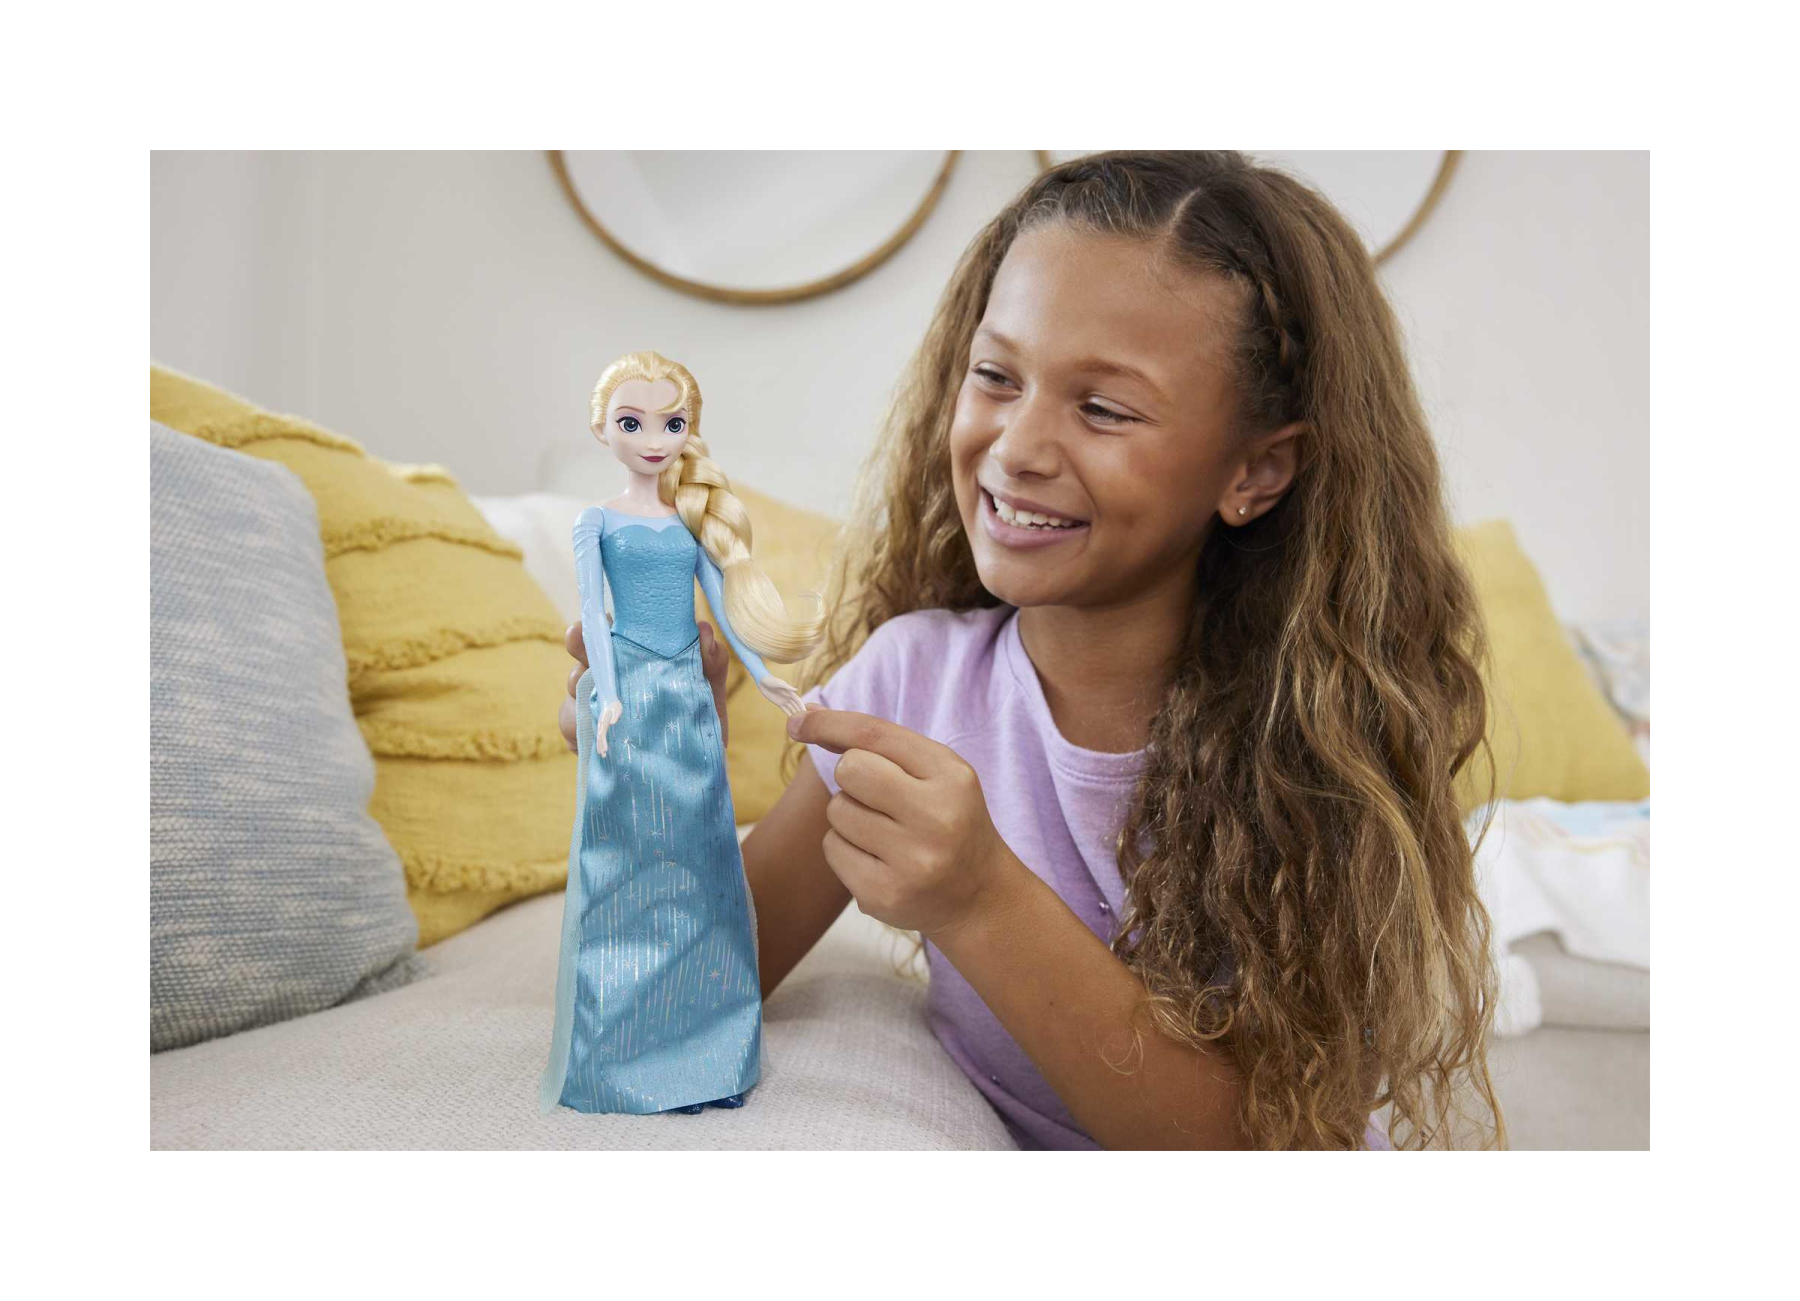 Hasbro Disney Frozen Royal Reveal Bambola di Elsa con Abito Che Cambia 2 in  1